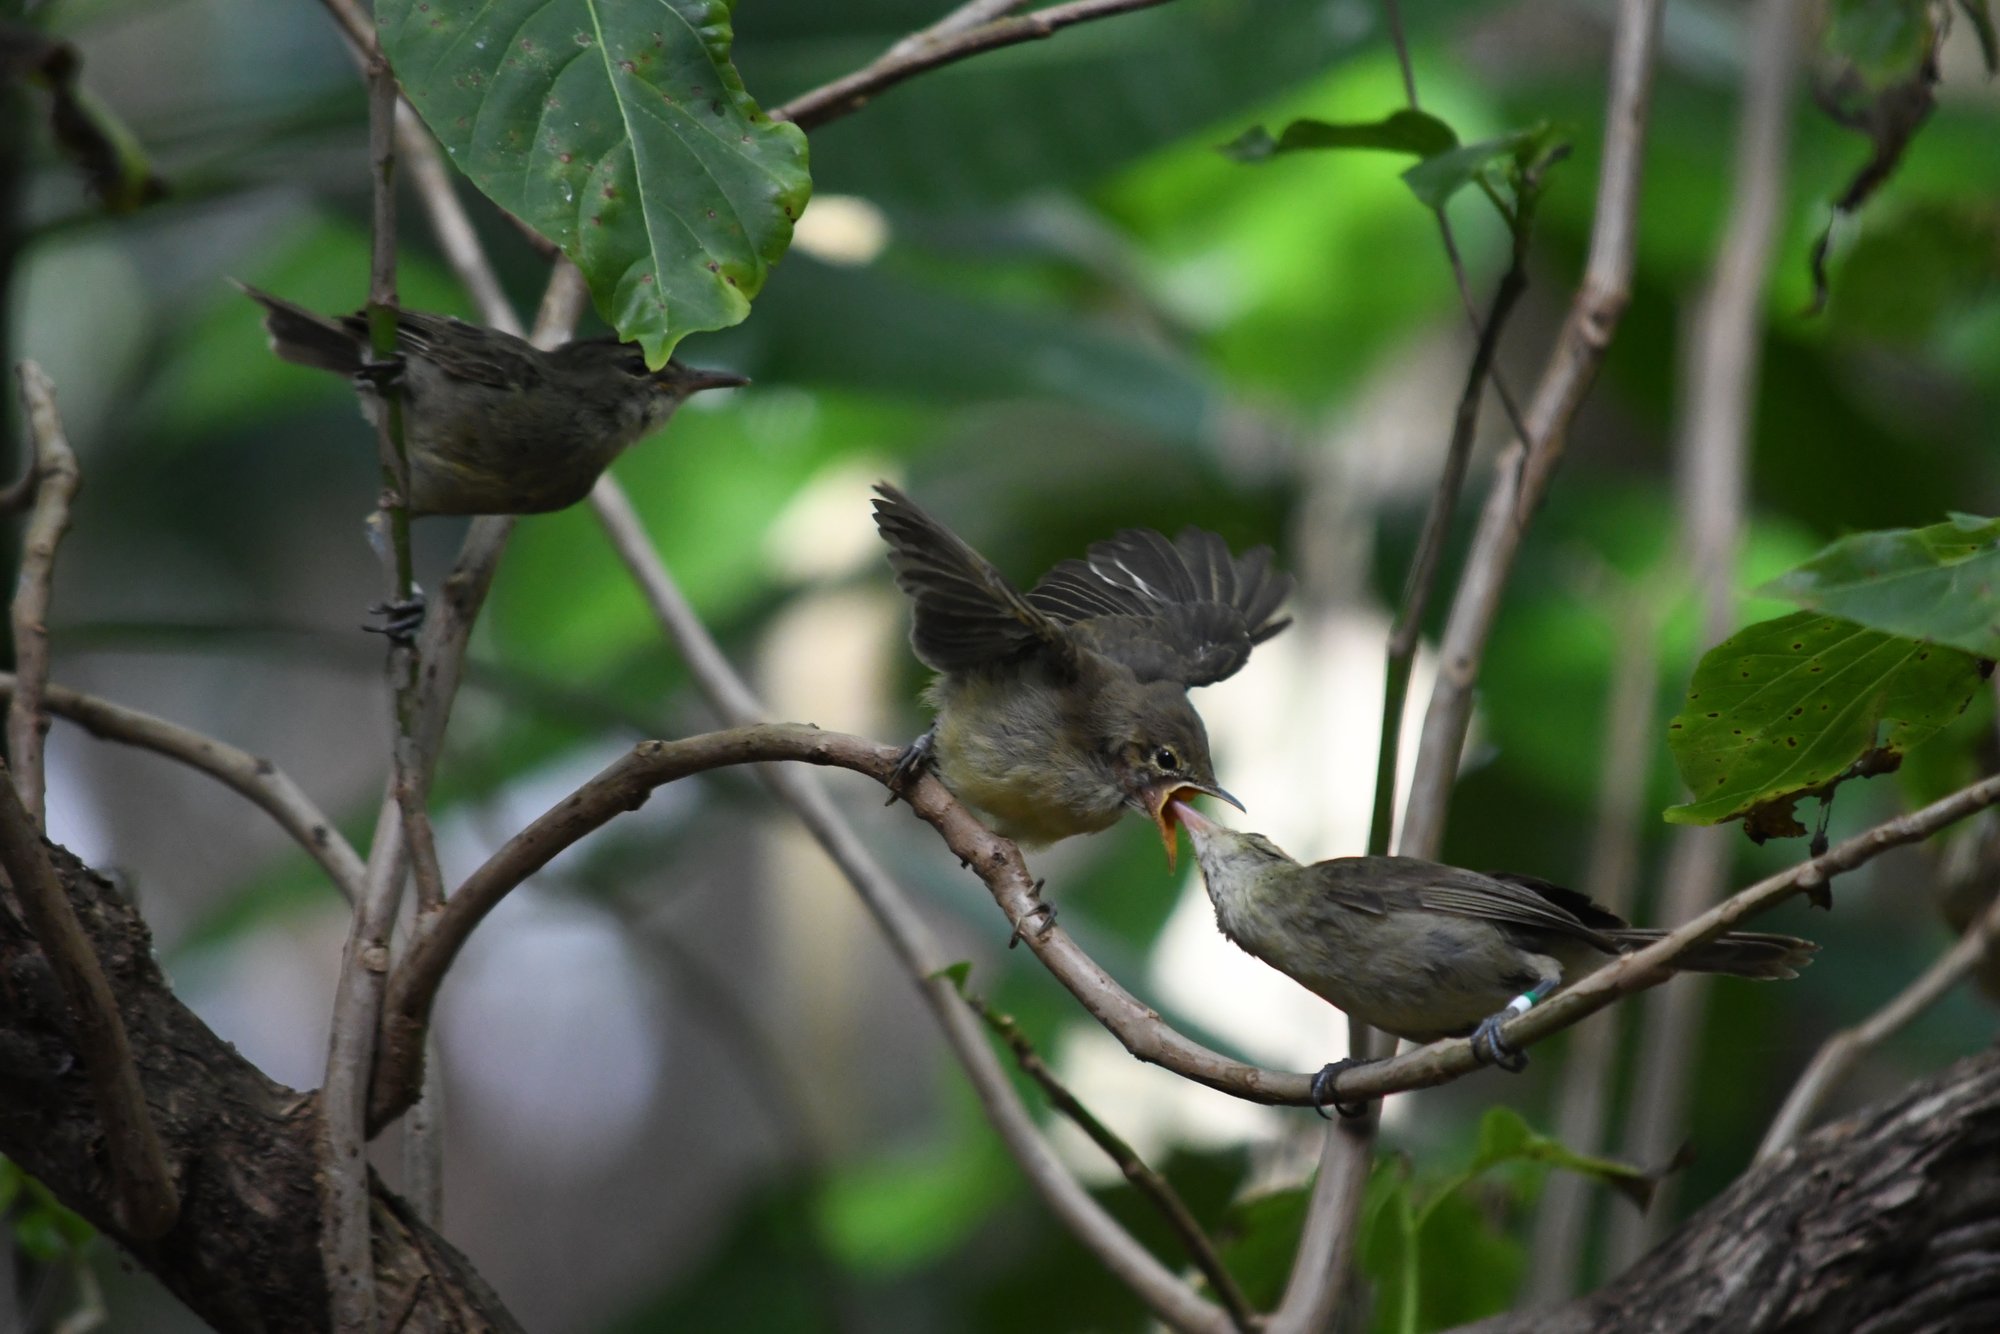 Seychelles warblers